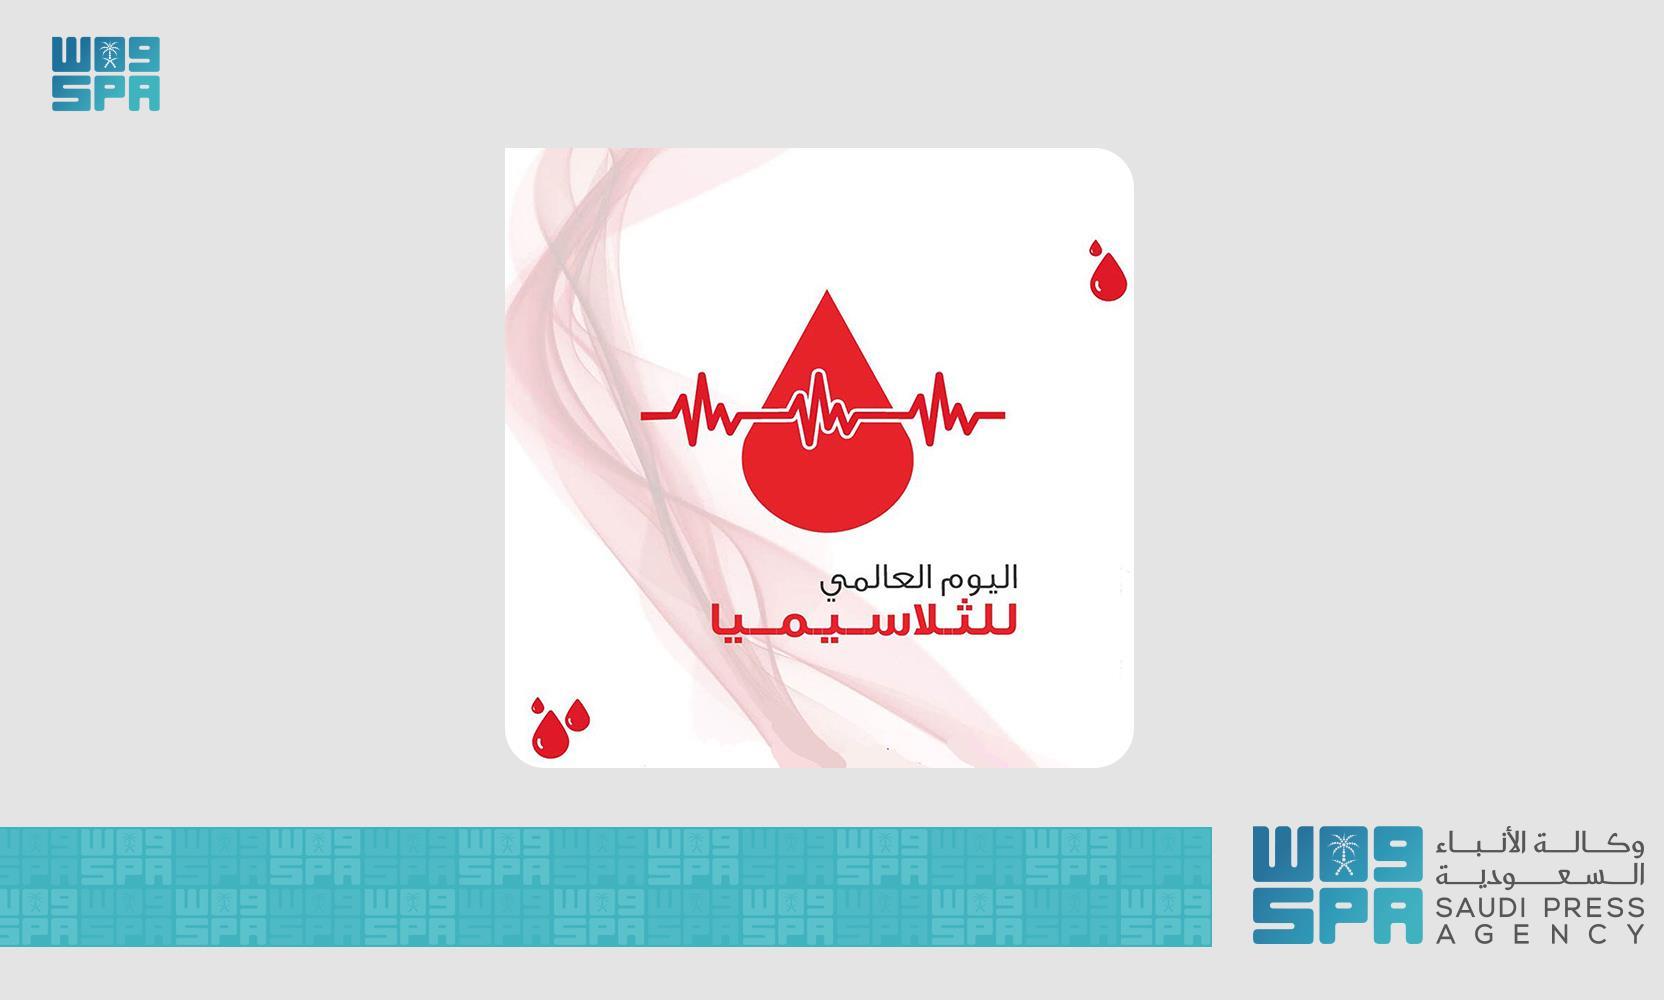 عام / اليوم العالمي للثلاسيميا .. نشر الوعي الصحي عن فقر الدم بأسلوب حضاري